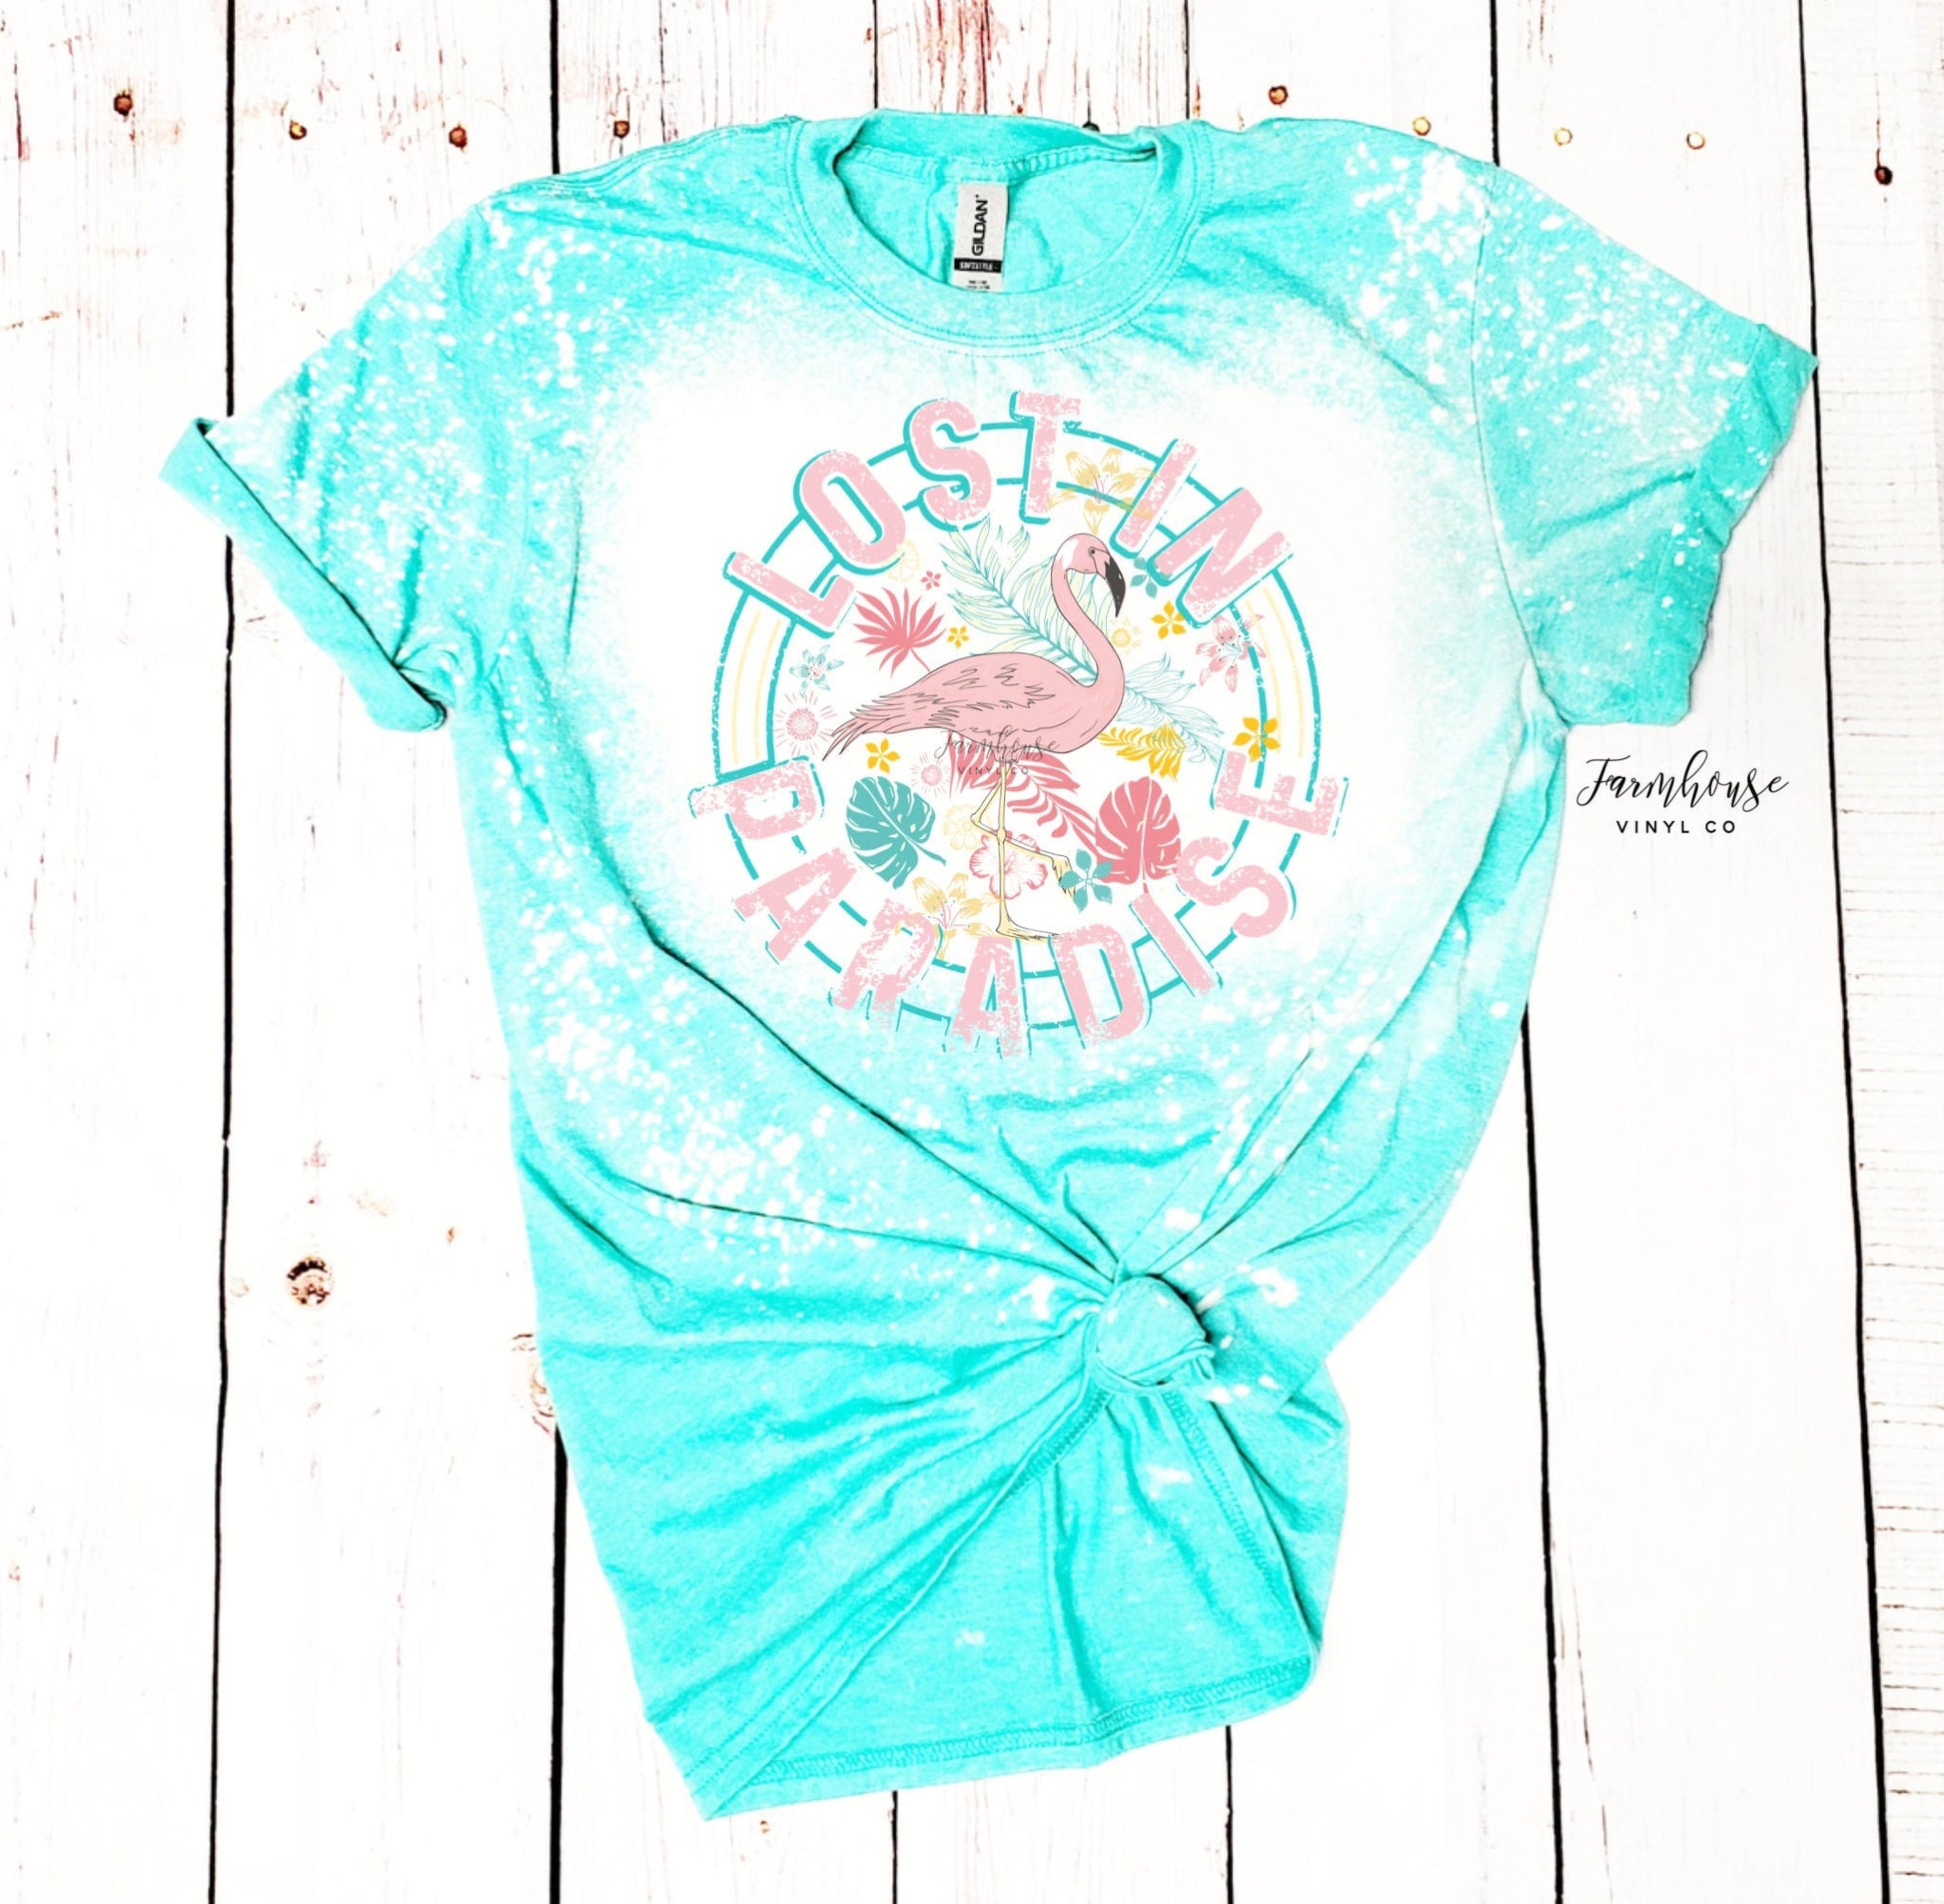 Lost in Paradise Flamingo Summer Shirt / Ocean Beach Trip / Summer Vacation Shirt / Neon Summer / Womens Summer TShirt / Beach Trip Tee - Farmhouse Vinyl Co